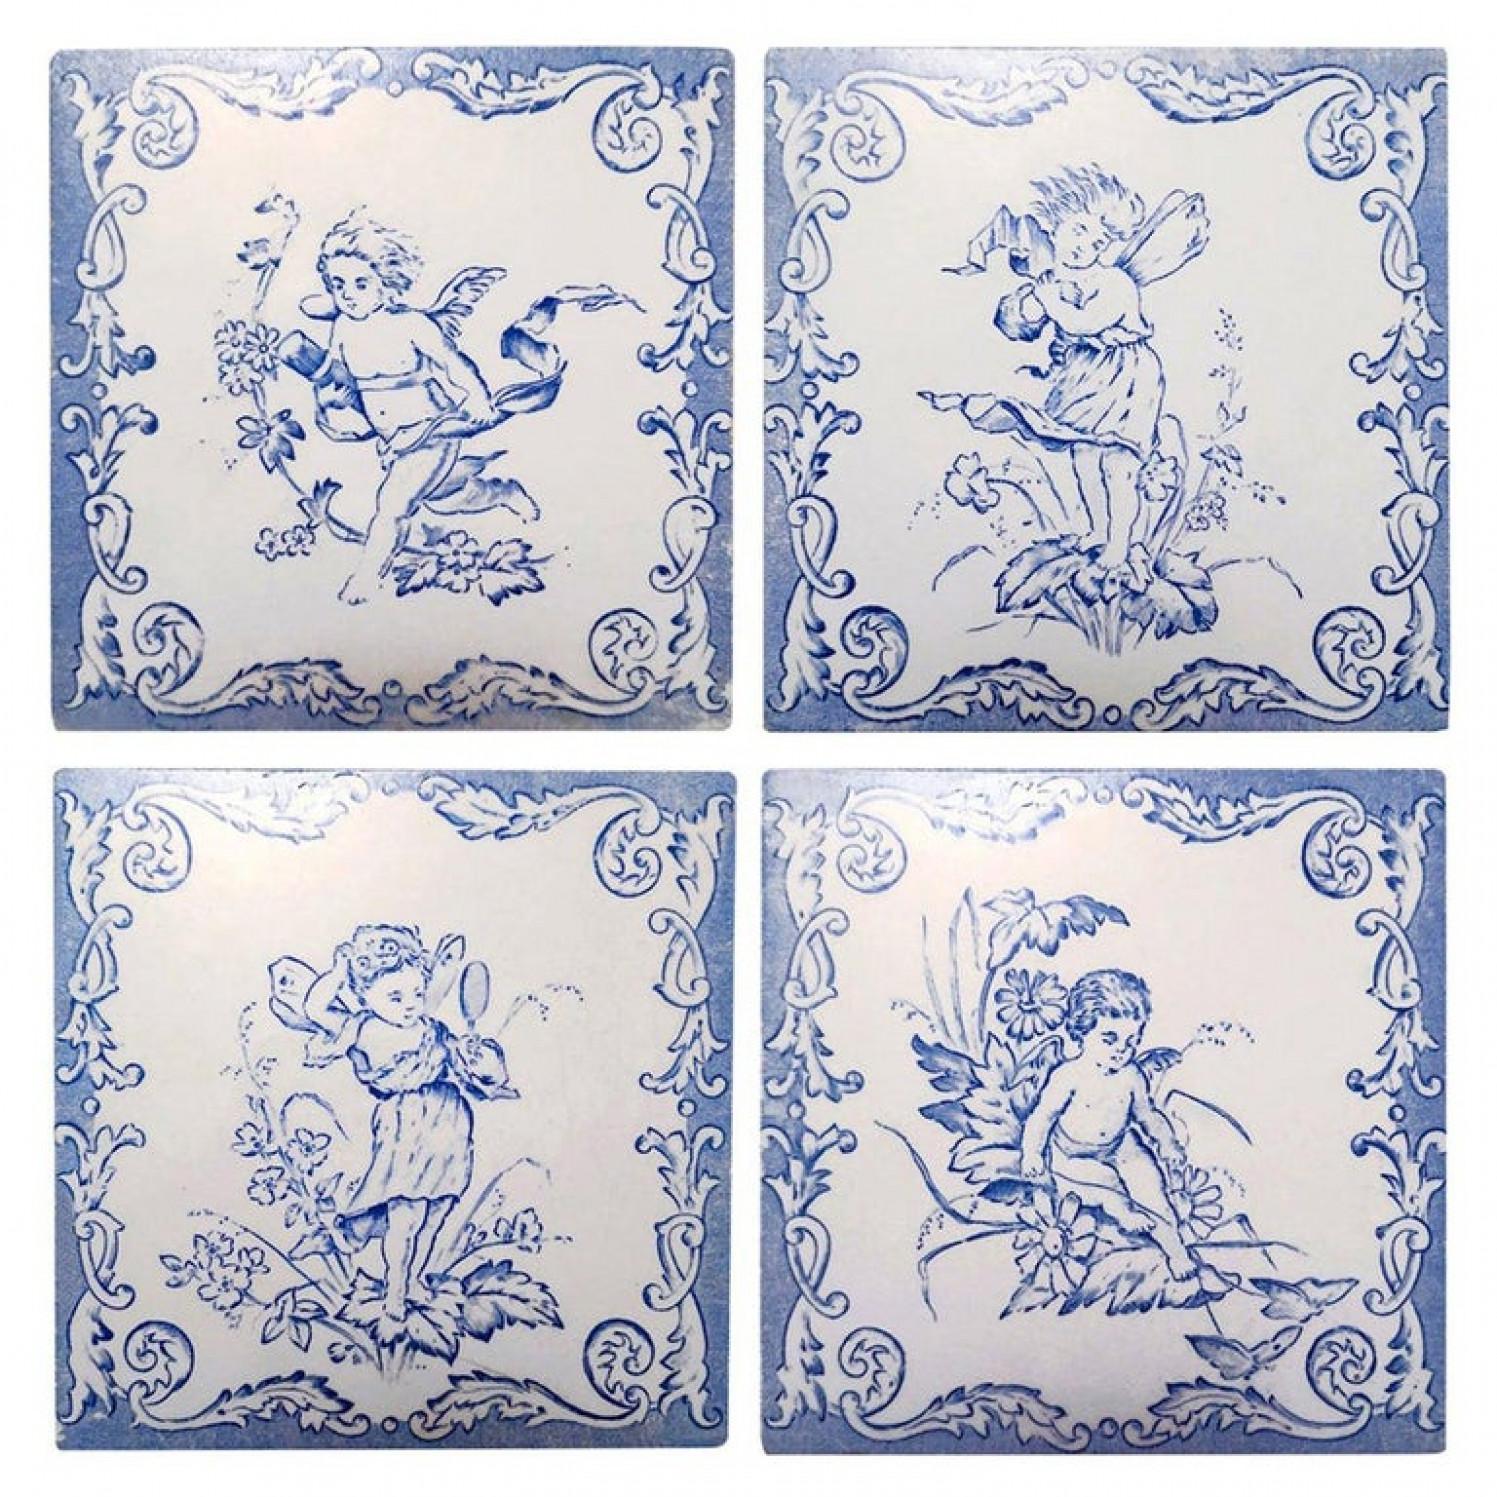 Dies ist ein erstaunliches Set von 4 handgefertigten Fliesen mit 4 verschiedenen stilisierten Engel/Putti-Motiven in sehr hellem Blau mit weißem Hintergrund. Hergestellt um 1930 in Hasselt 